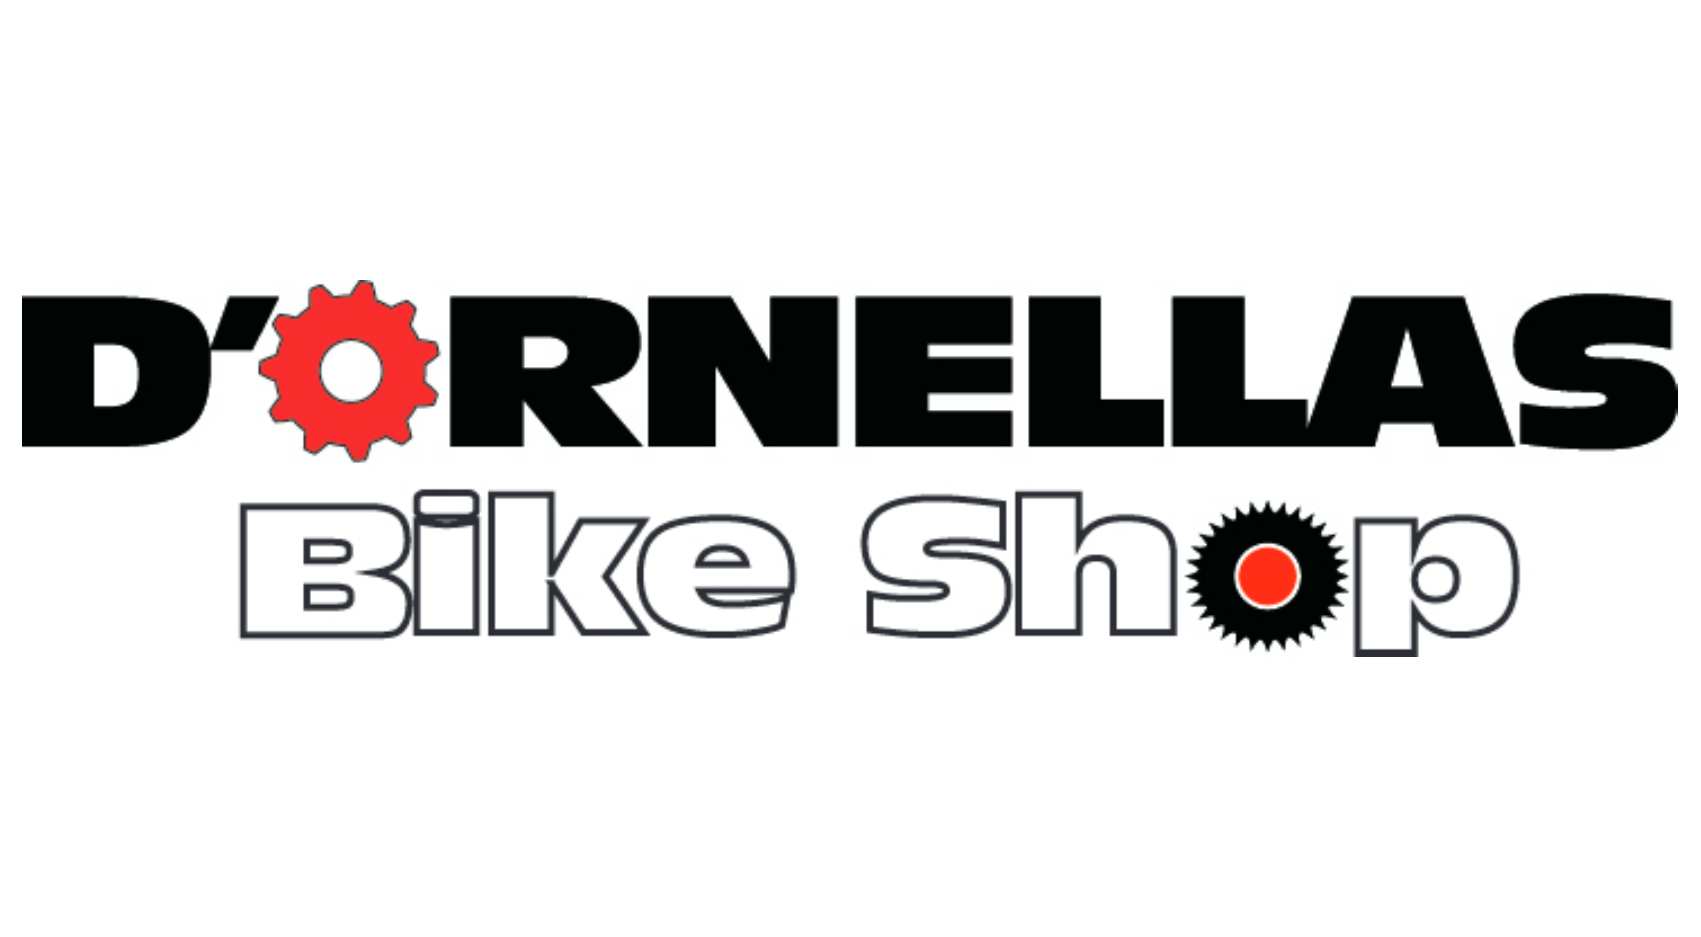 D'ornellas Bike Shop